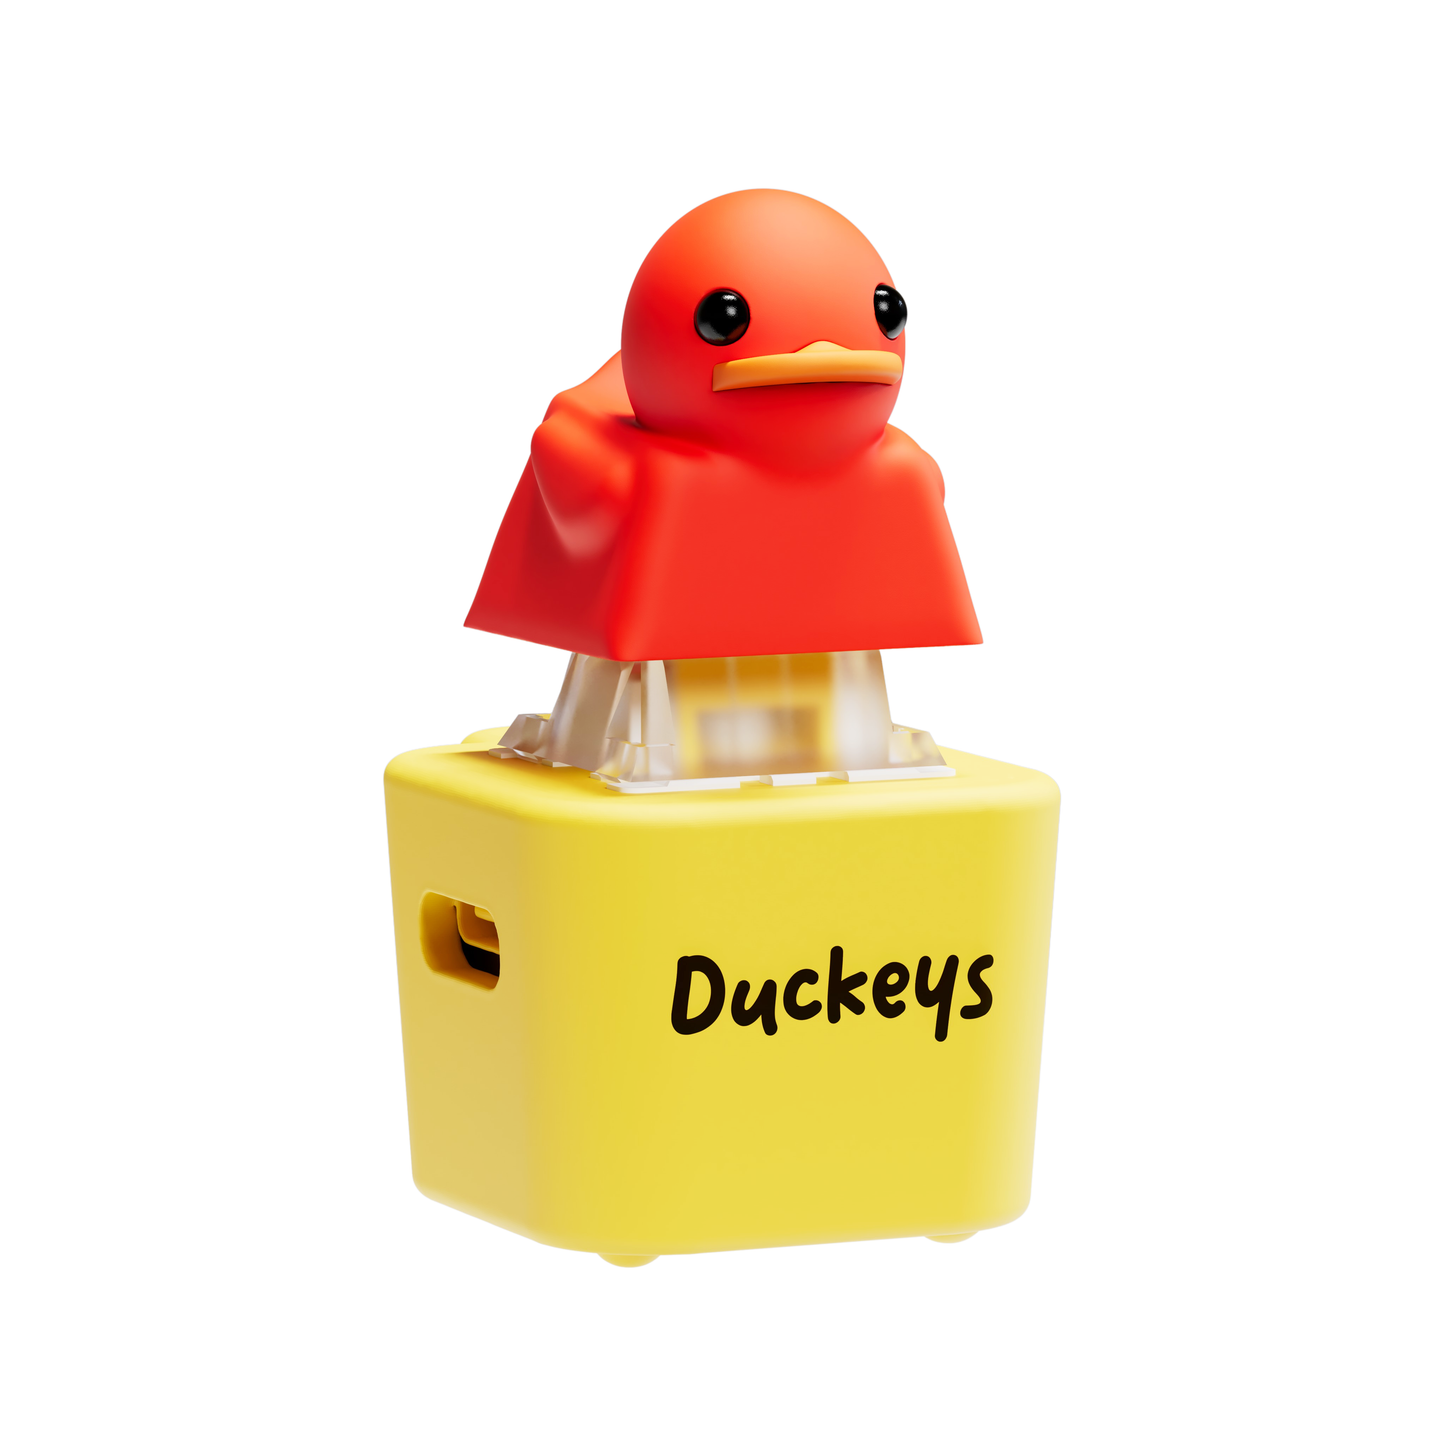 Quackey - Fidget Toy that Quacks!